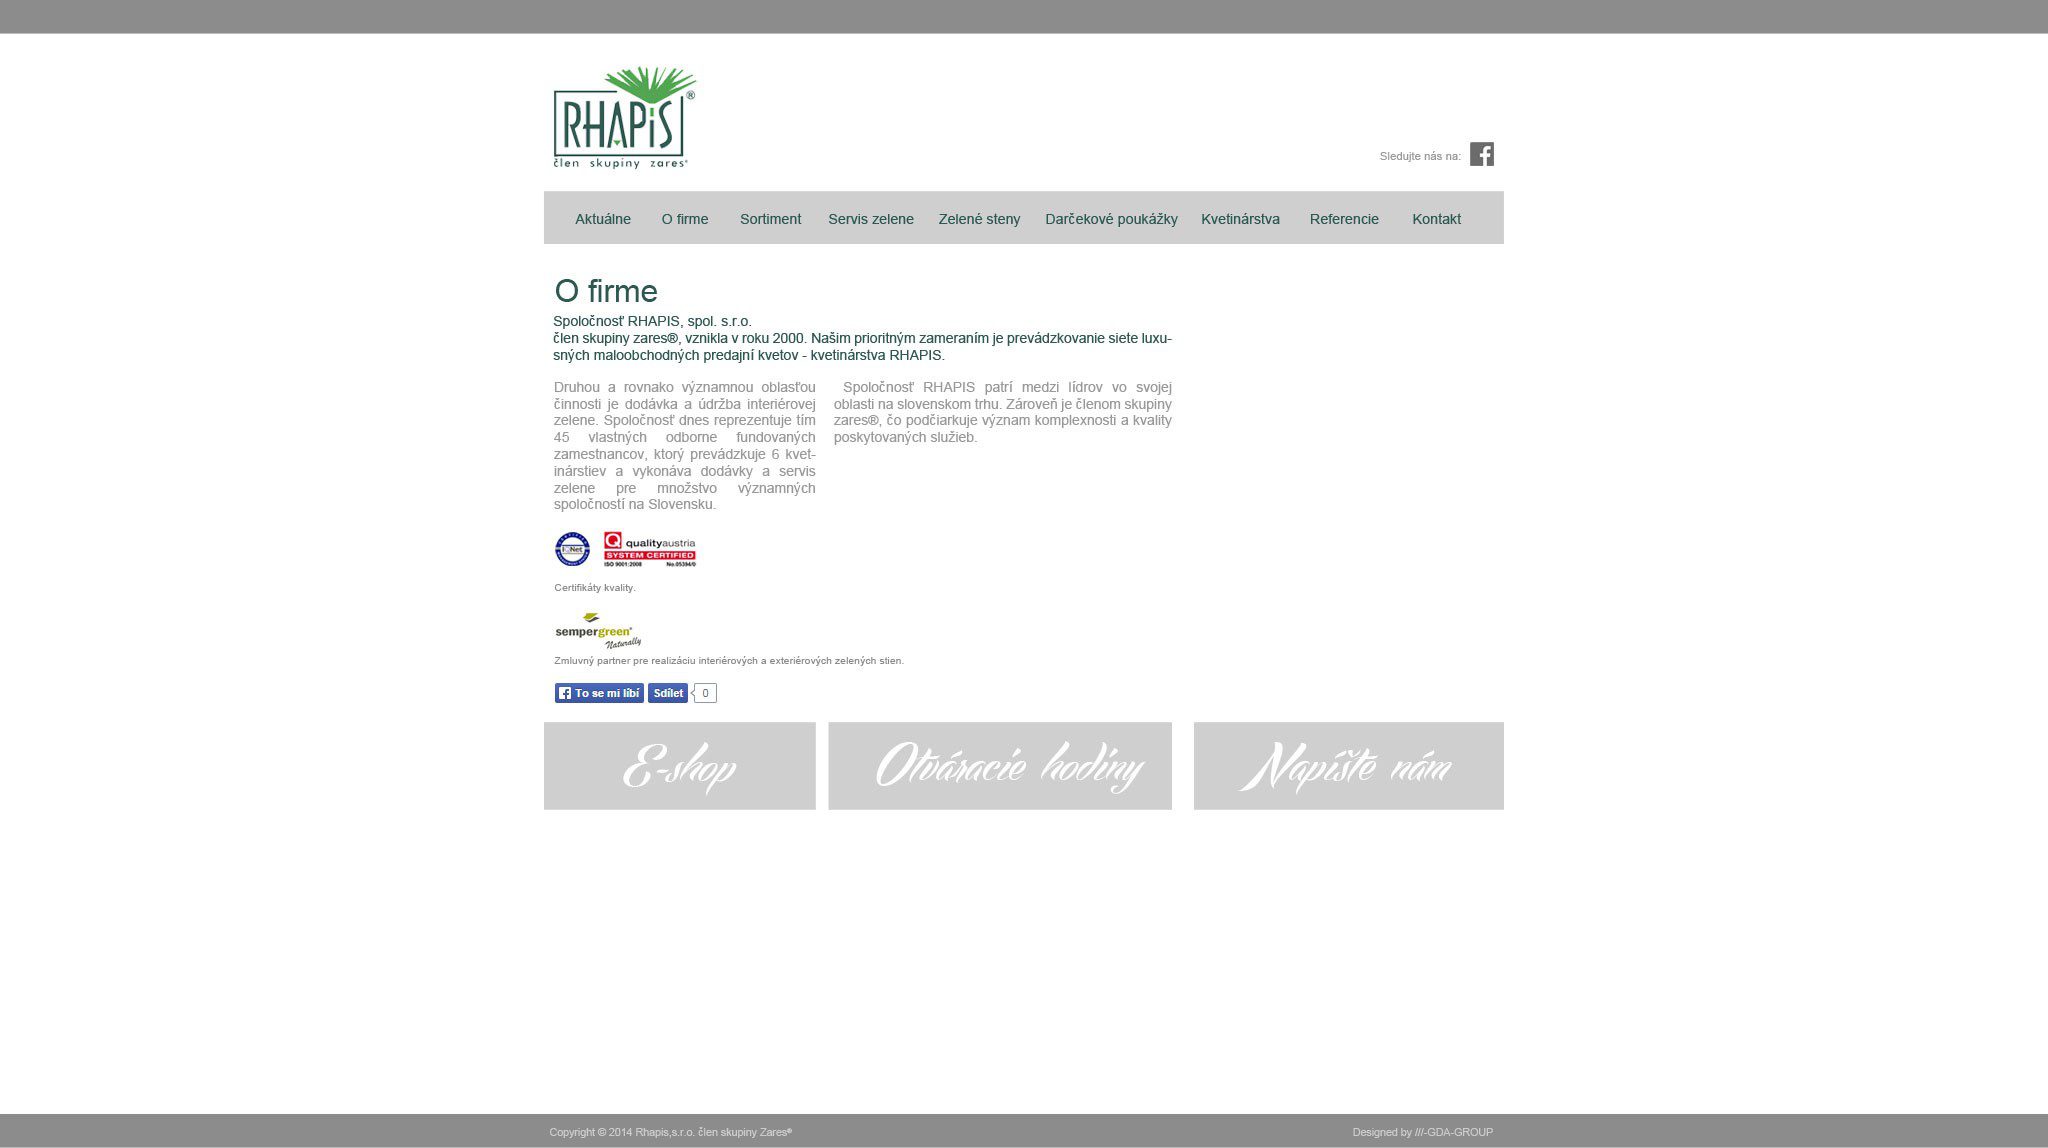 Gestaltung von Webseiten - RHAPIS - Über uns